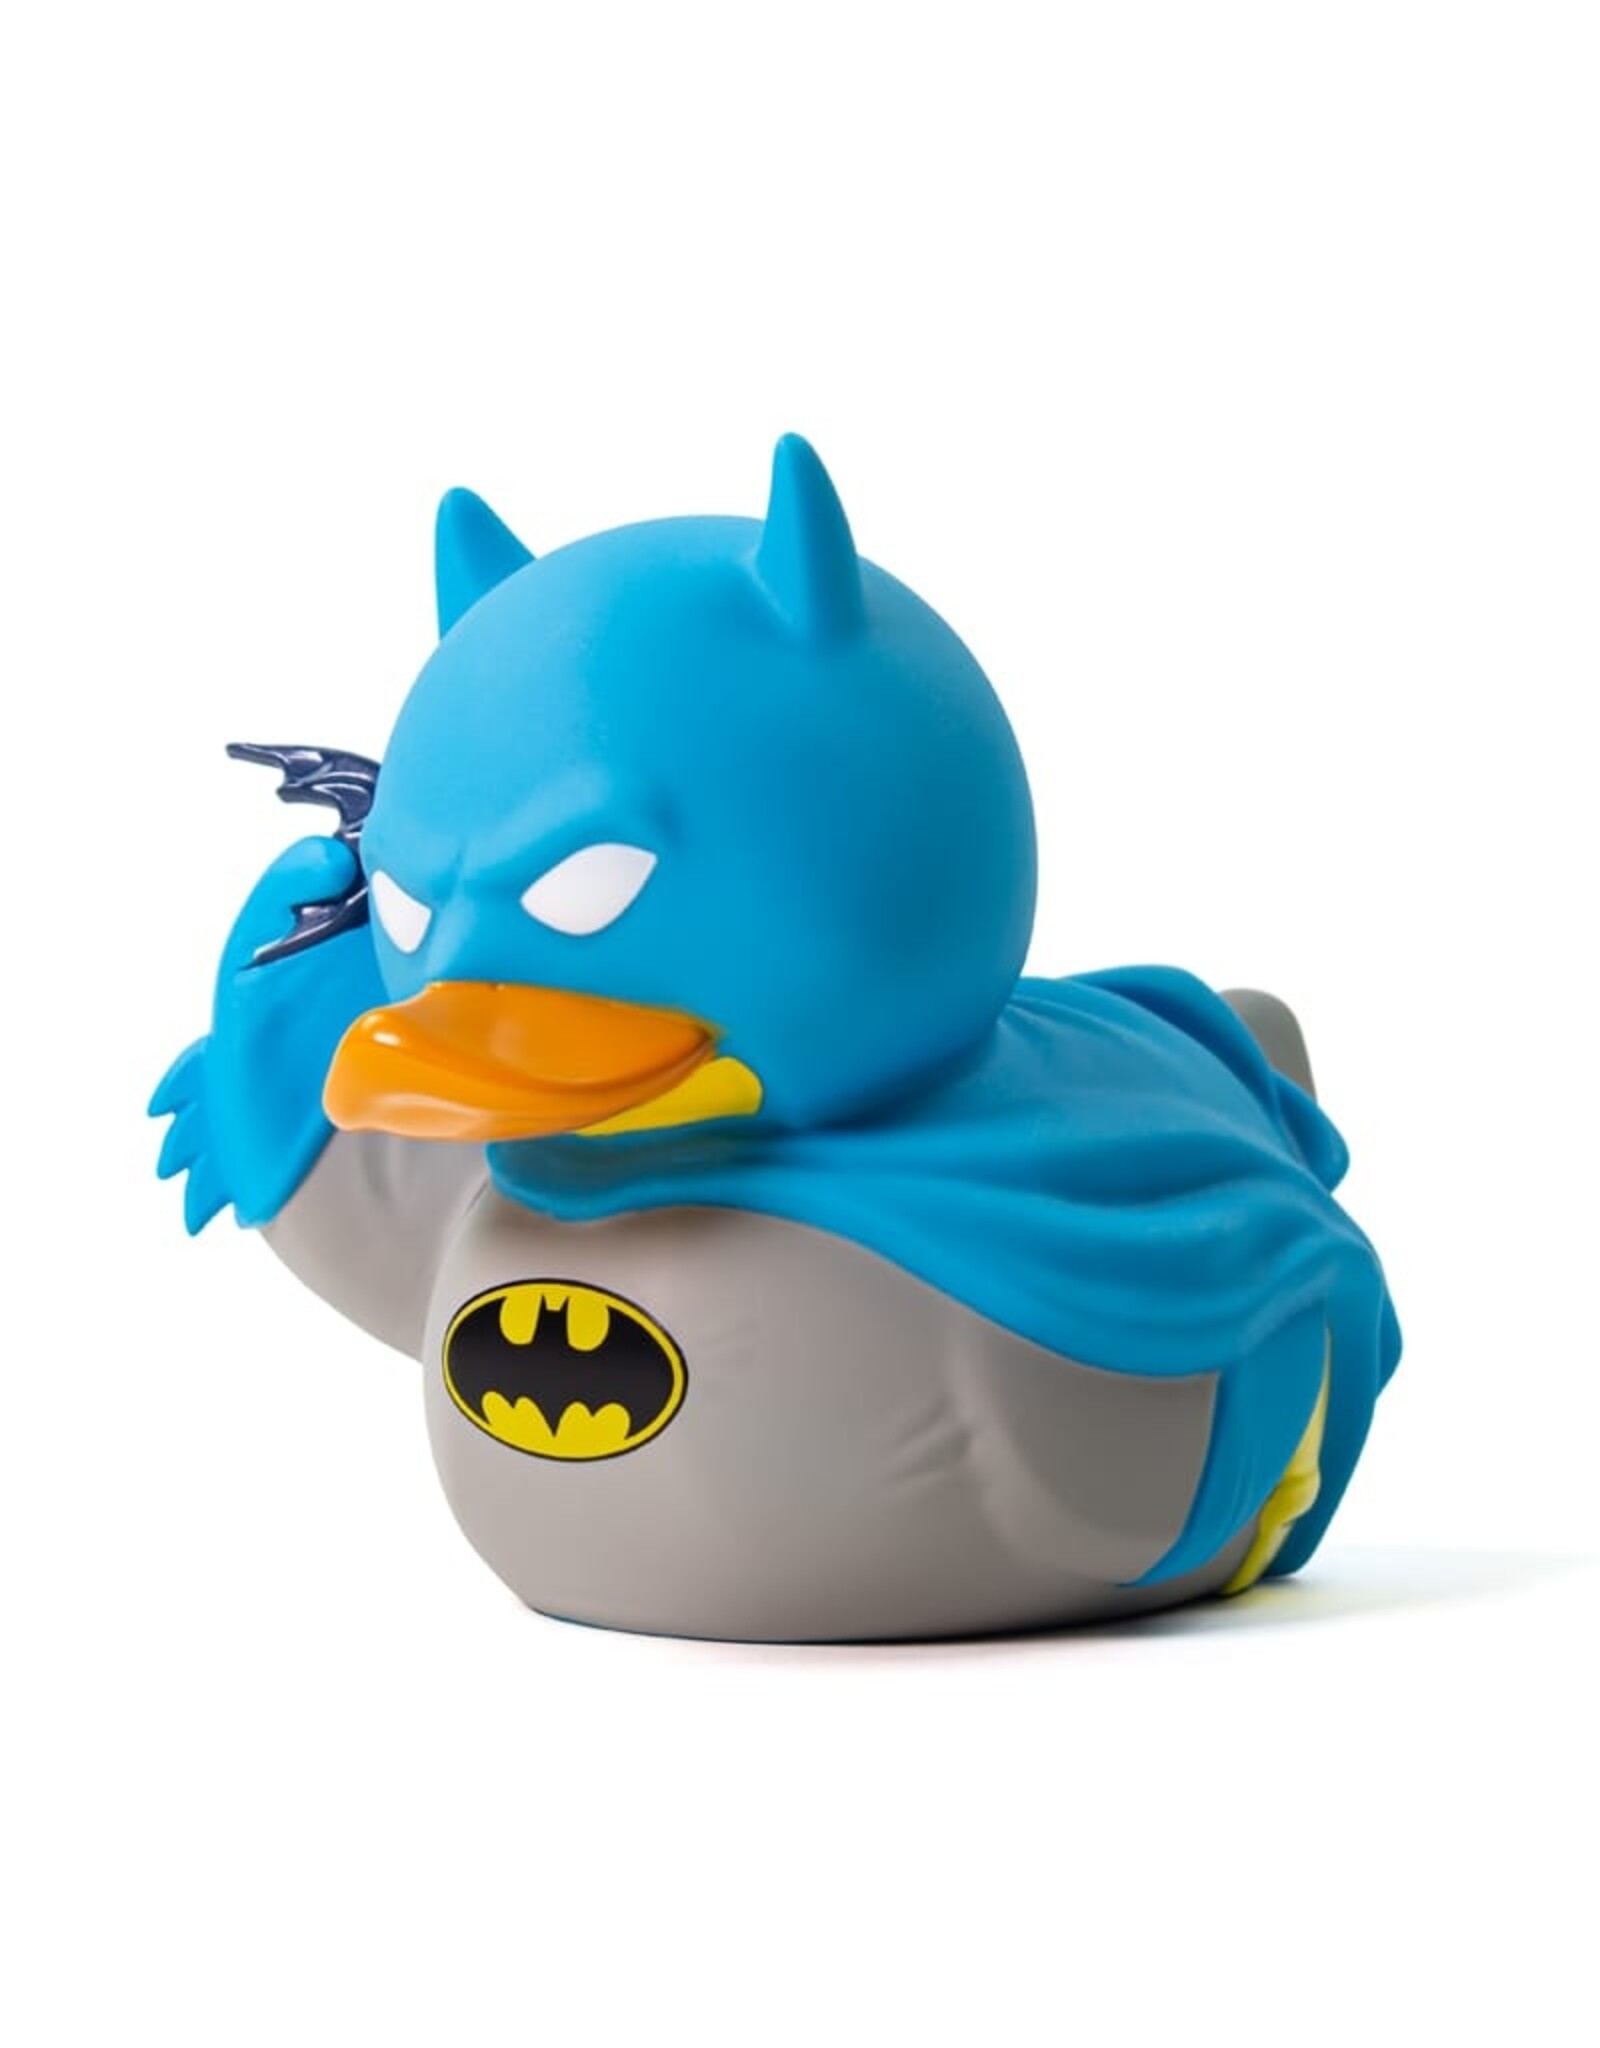 Tubbz Batman DC Comics Rubber Duck - Boxed Edition